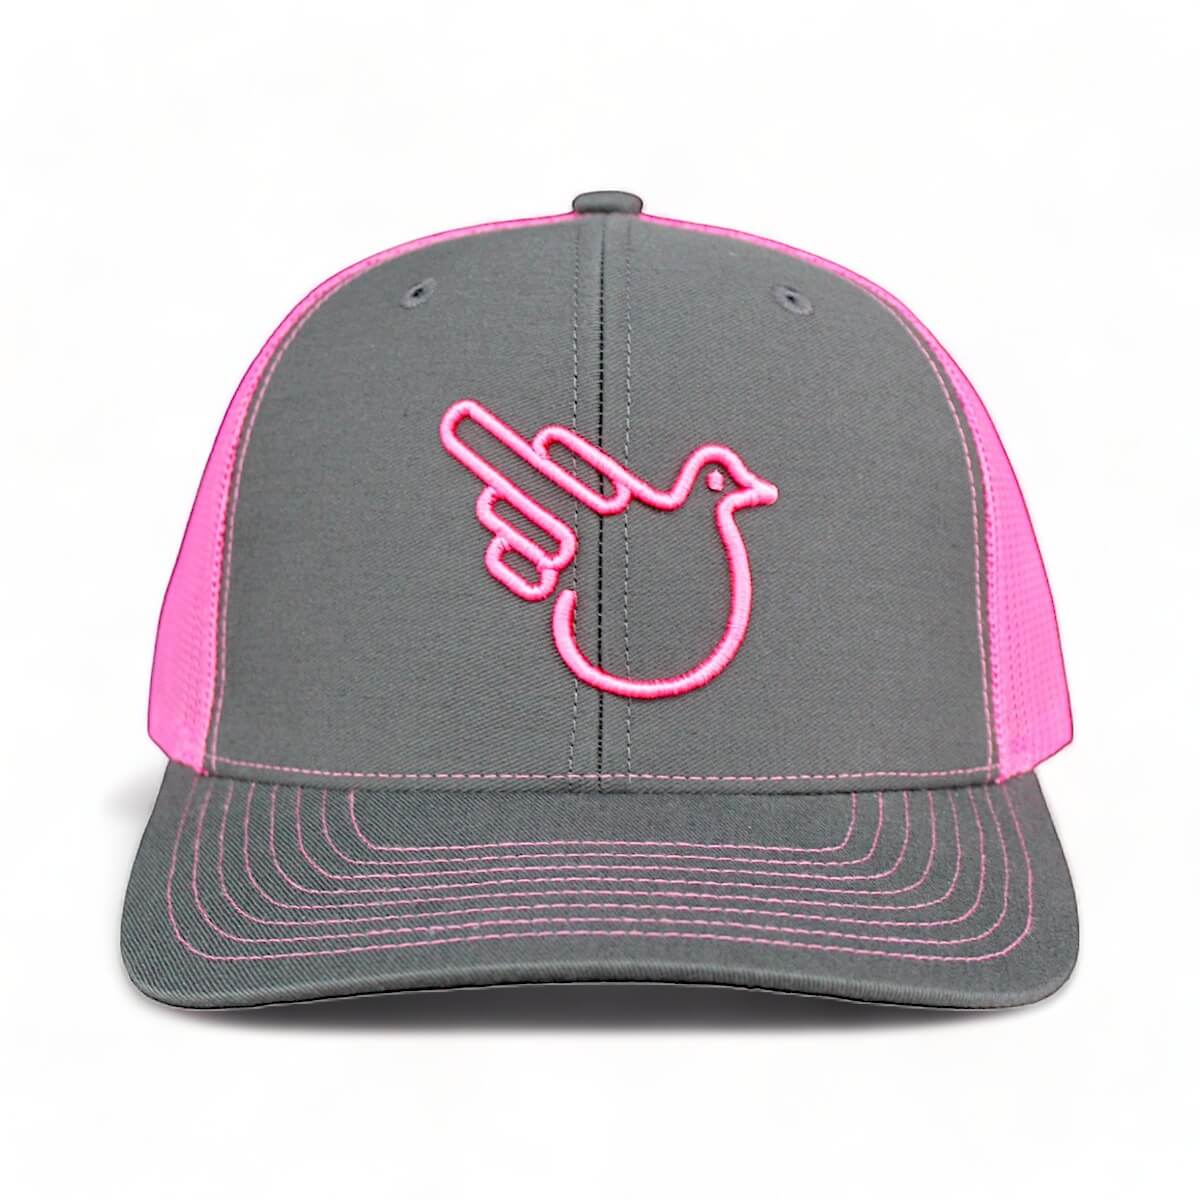 Pink Mesh Trucker Hat - Real Men Wear Pink – Effing Gear